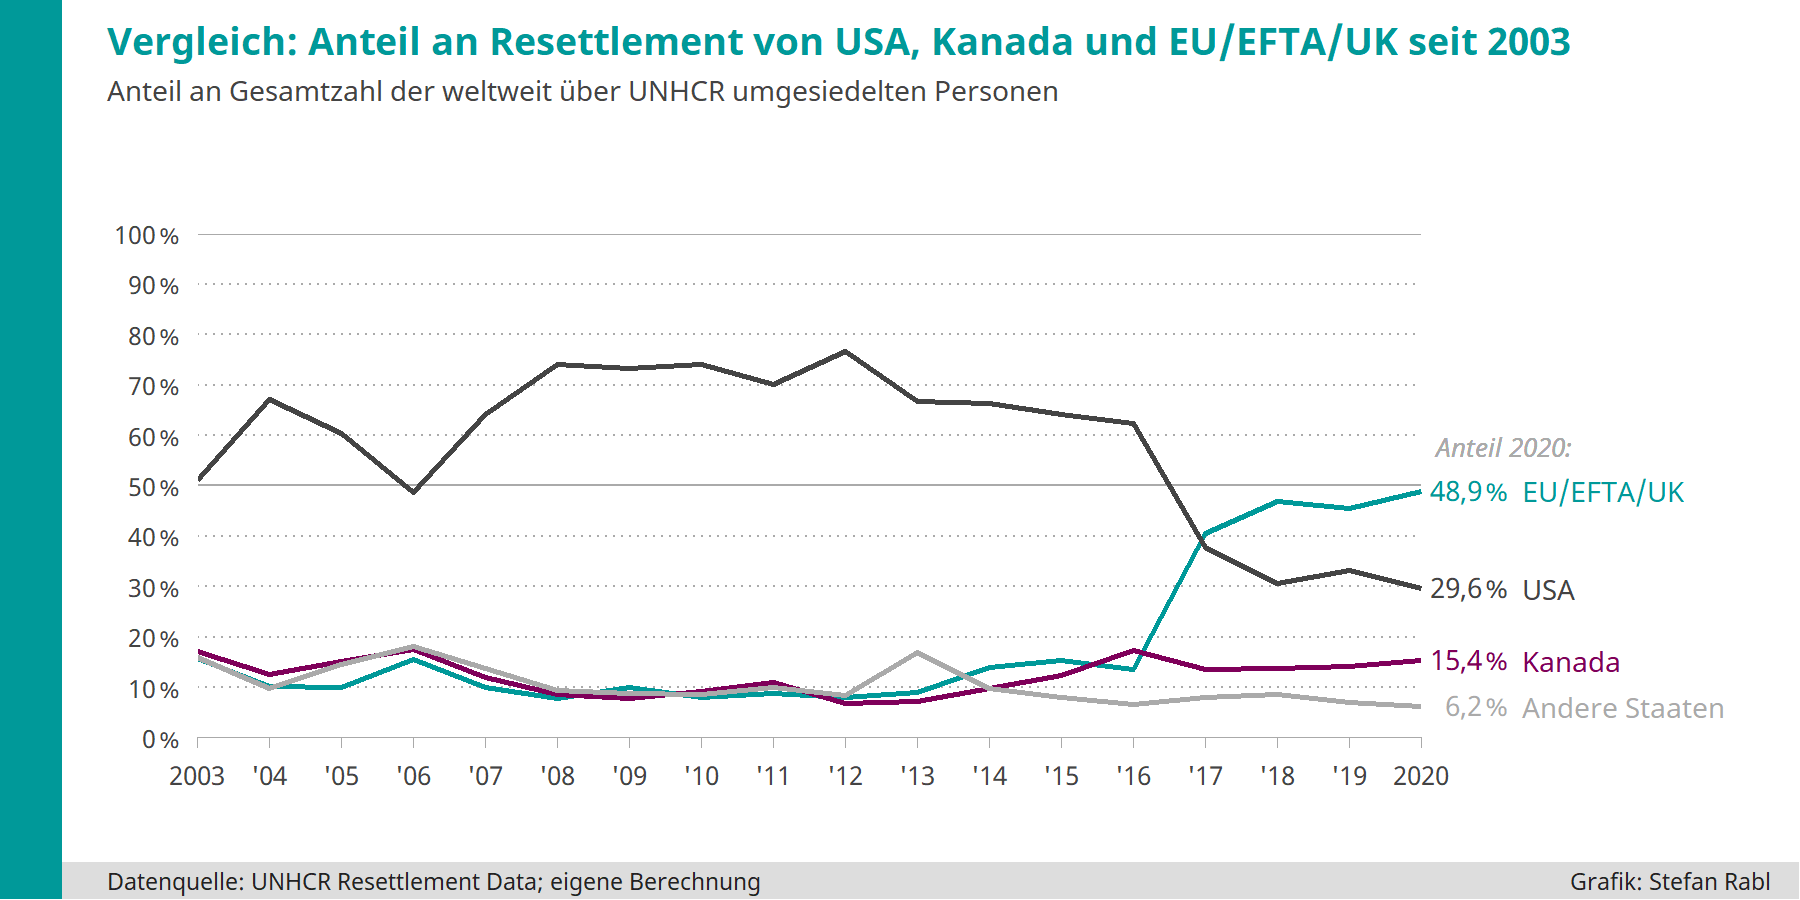 Grafik: Entwicklung Anteil an weltweitem Resettlement USA, Kanada, EU/EFTA-Staaten